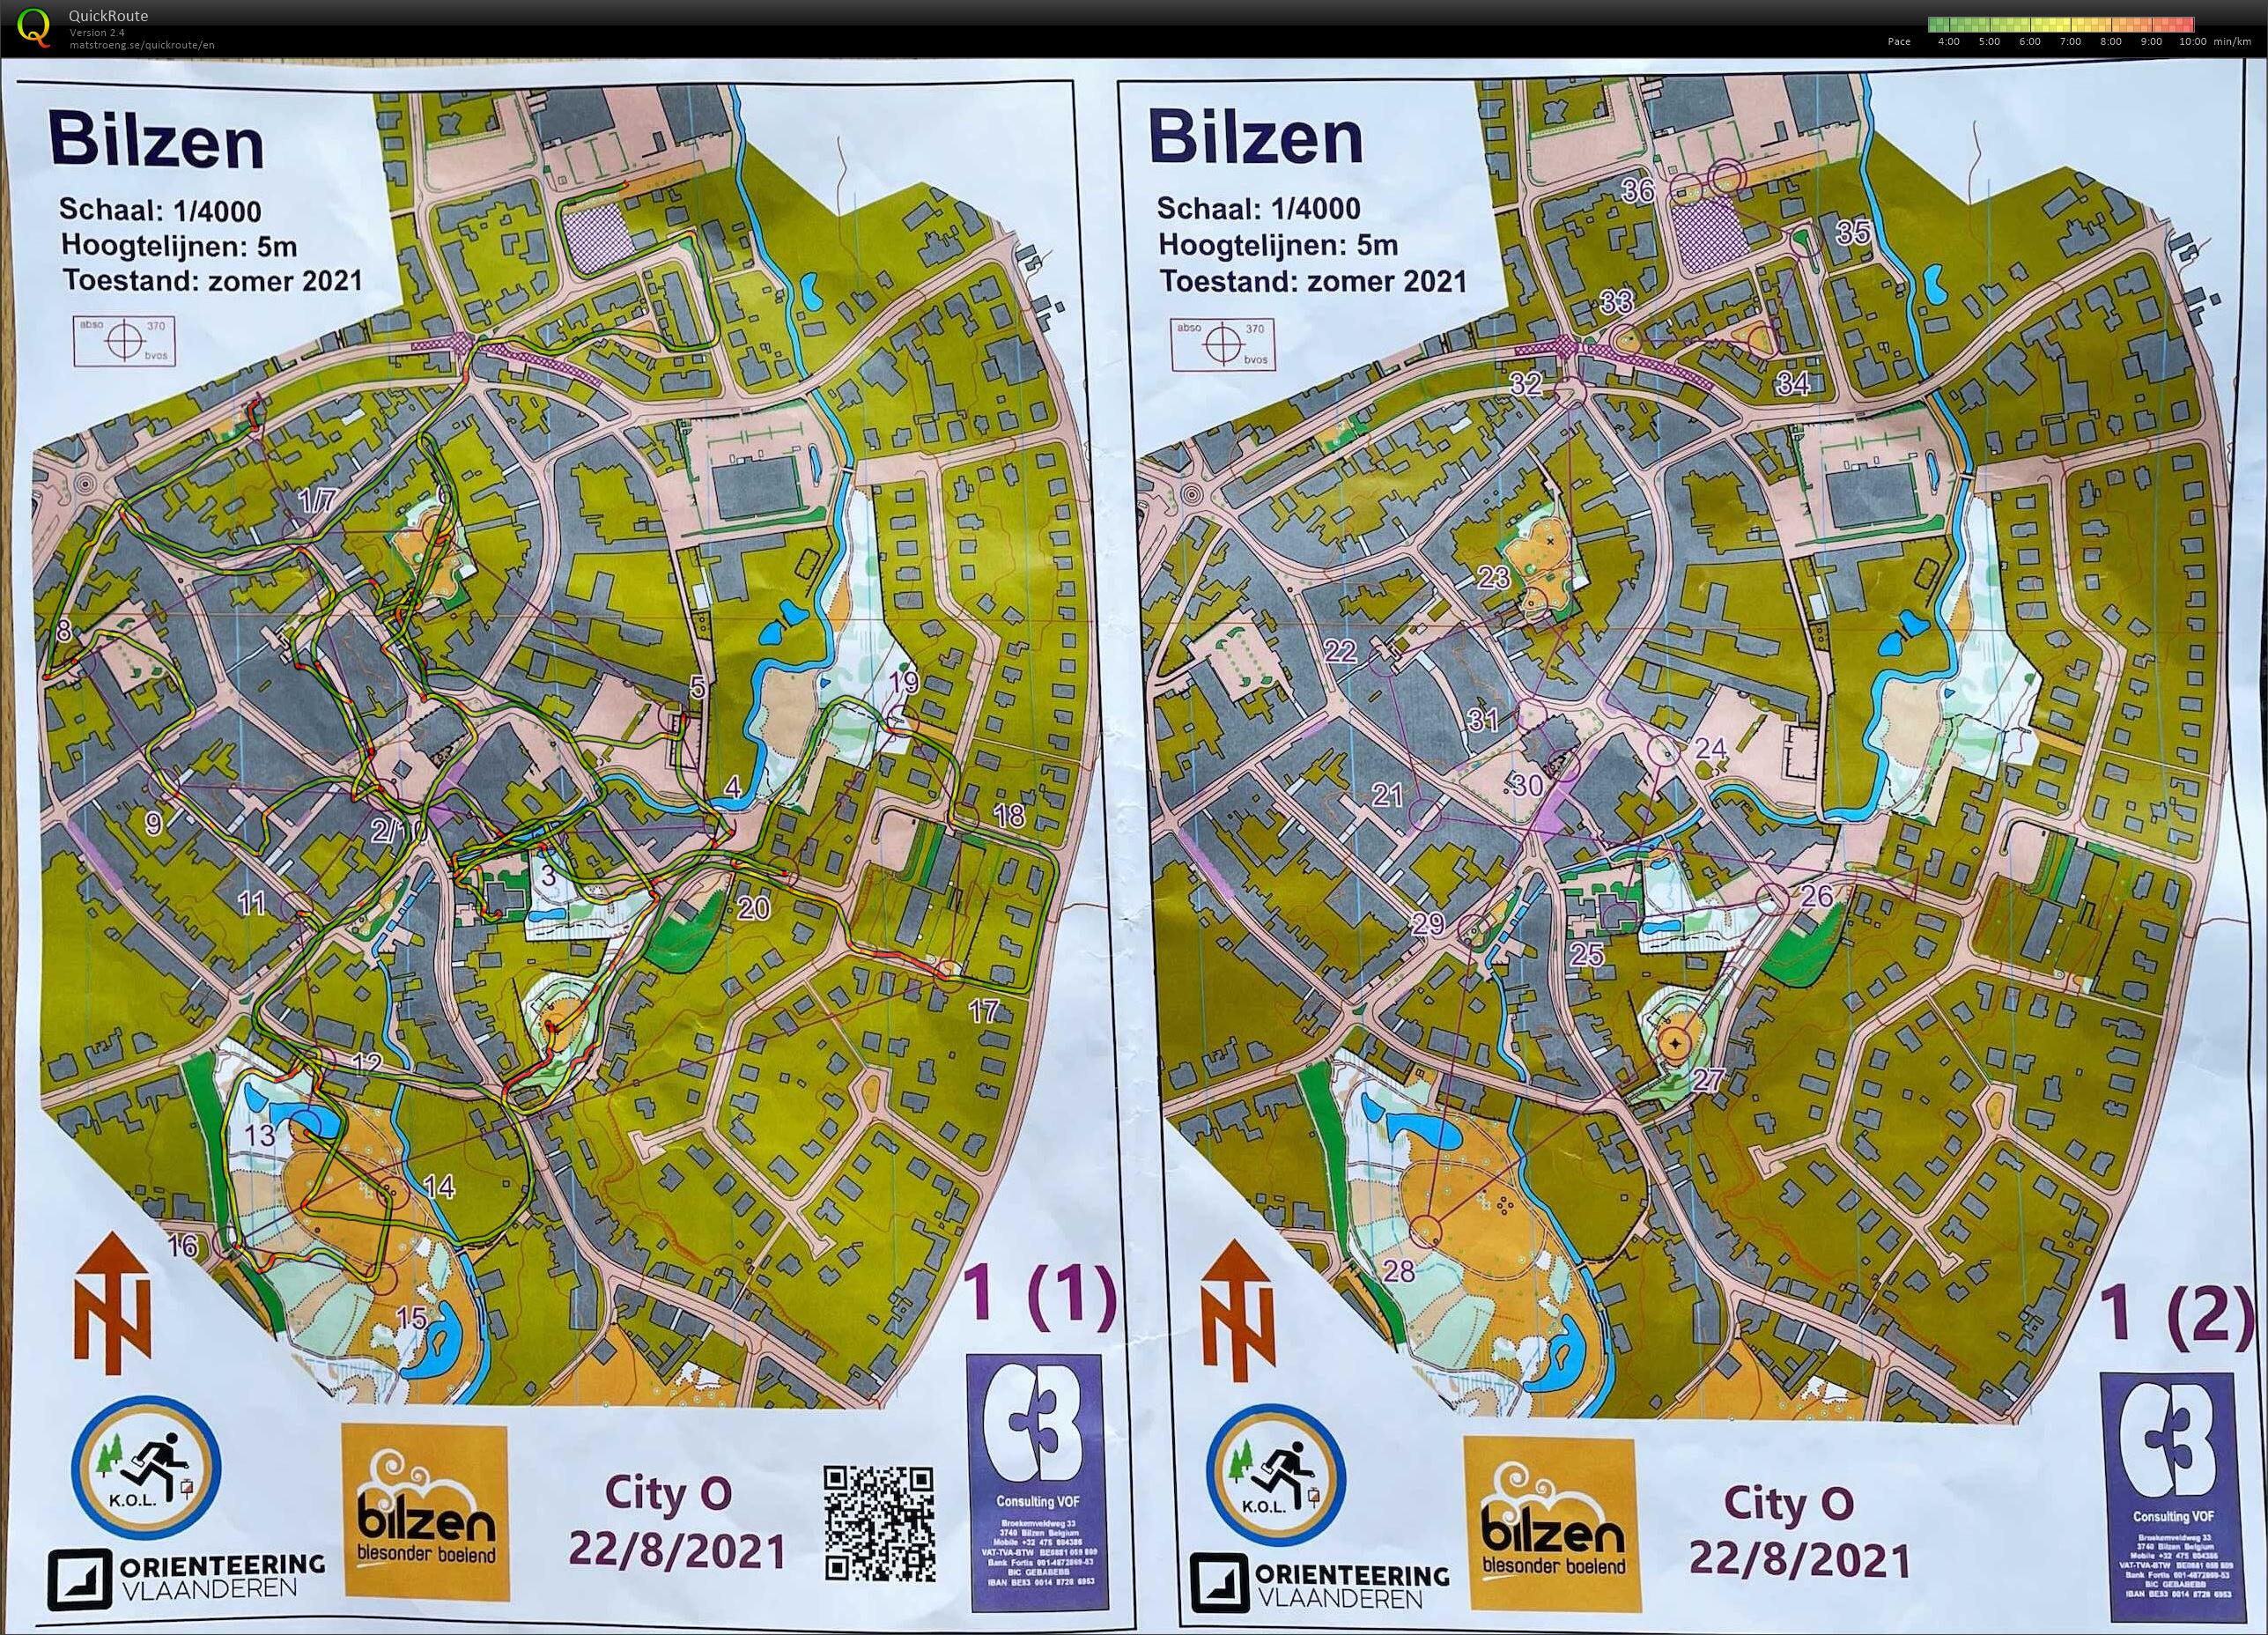 City-O Bilzen (2021-08-22)